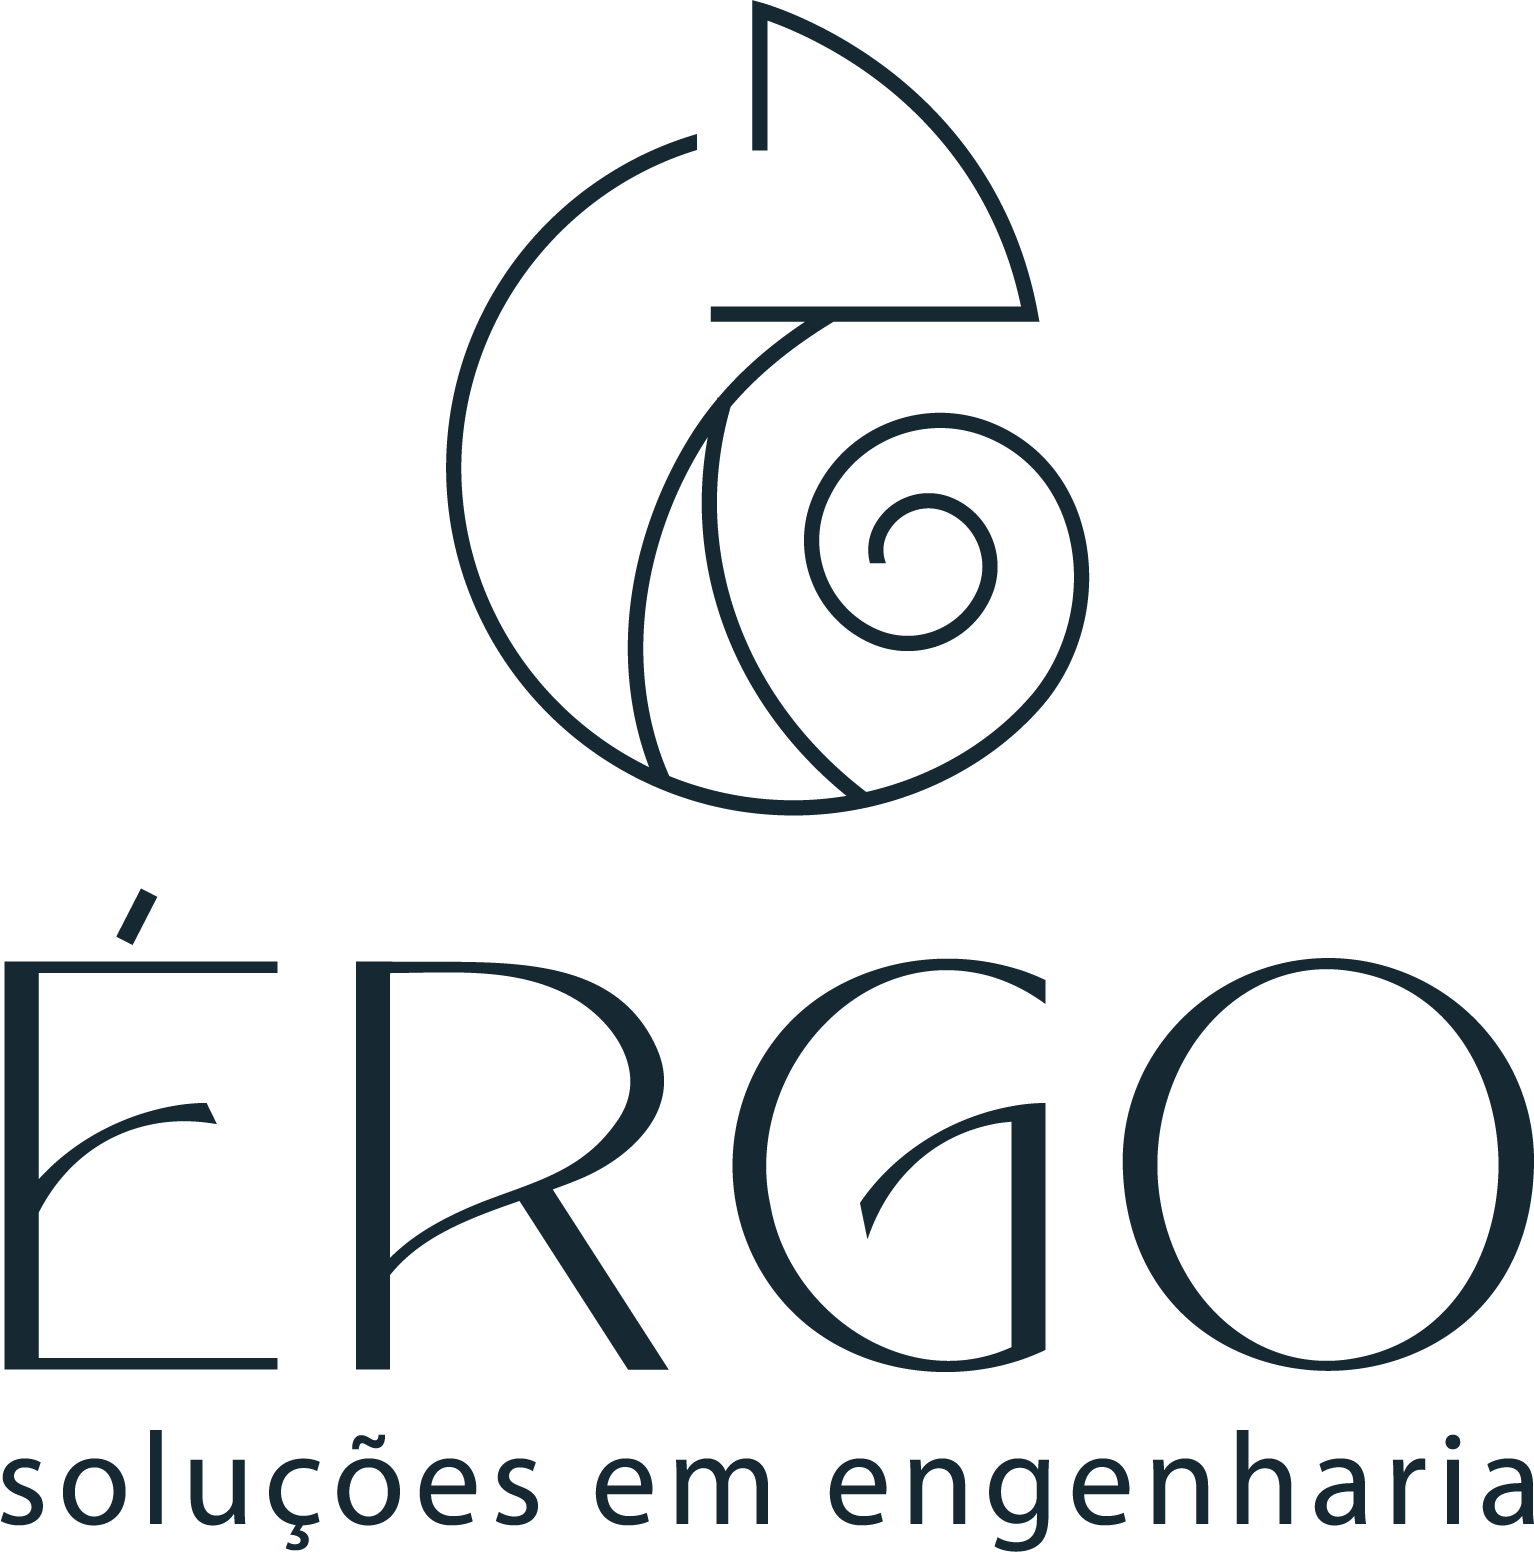 Logomarca ERGO, com fundo branco e escrita preta.